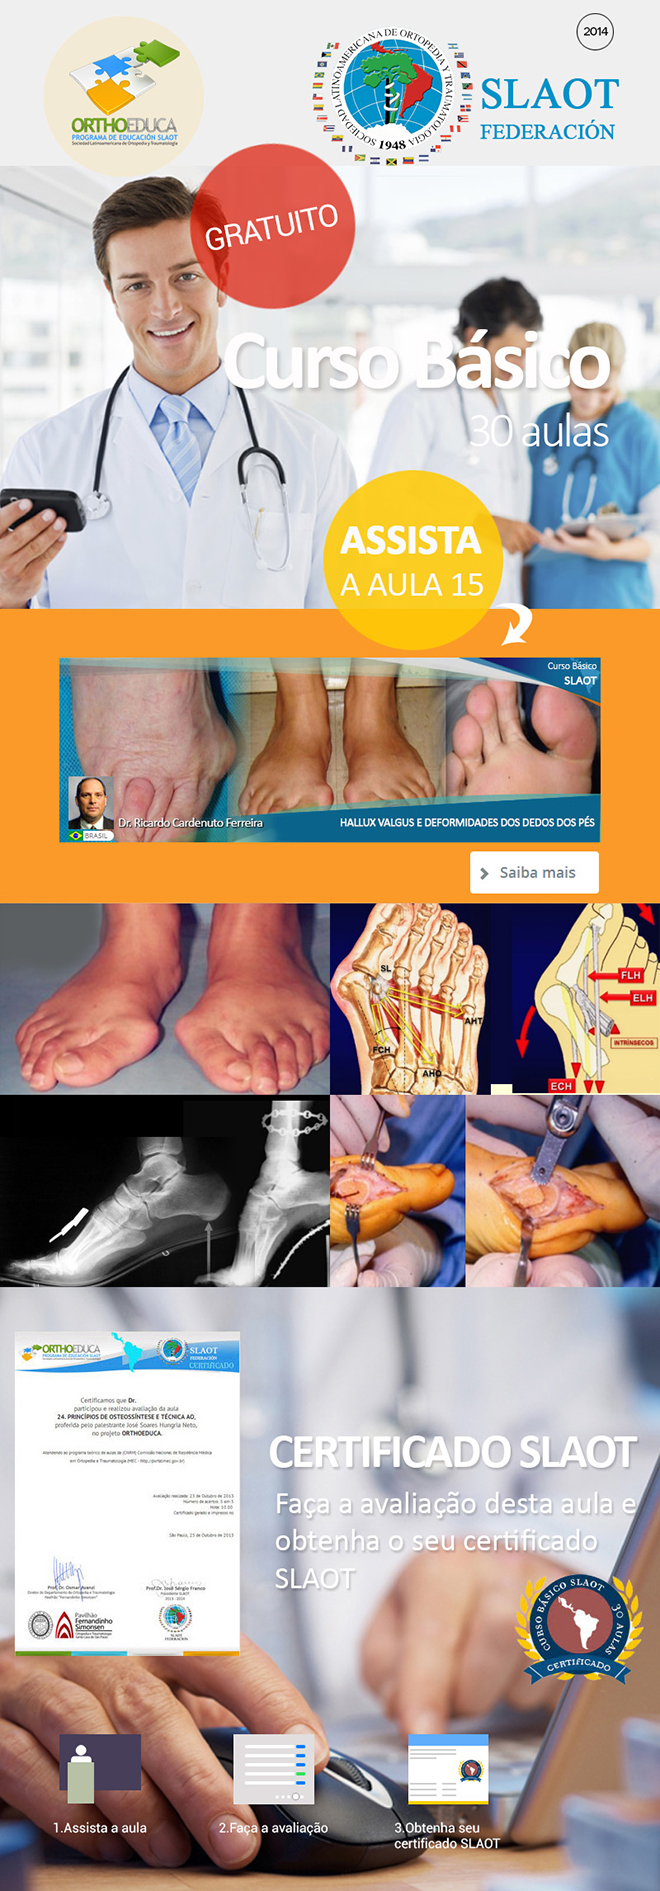 Assista a aula 16: Hallux Valgus e Deformidades dos Dedos dos Ps